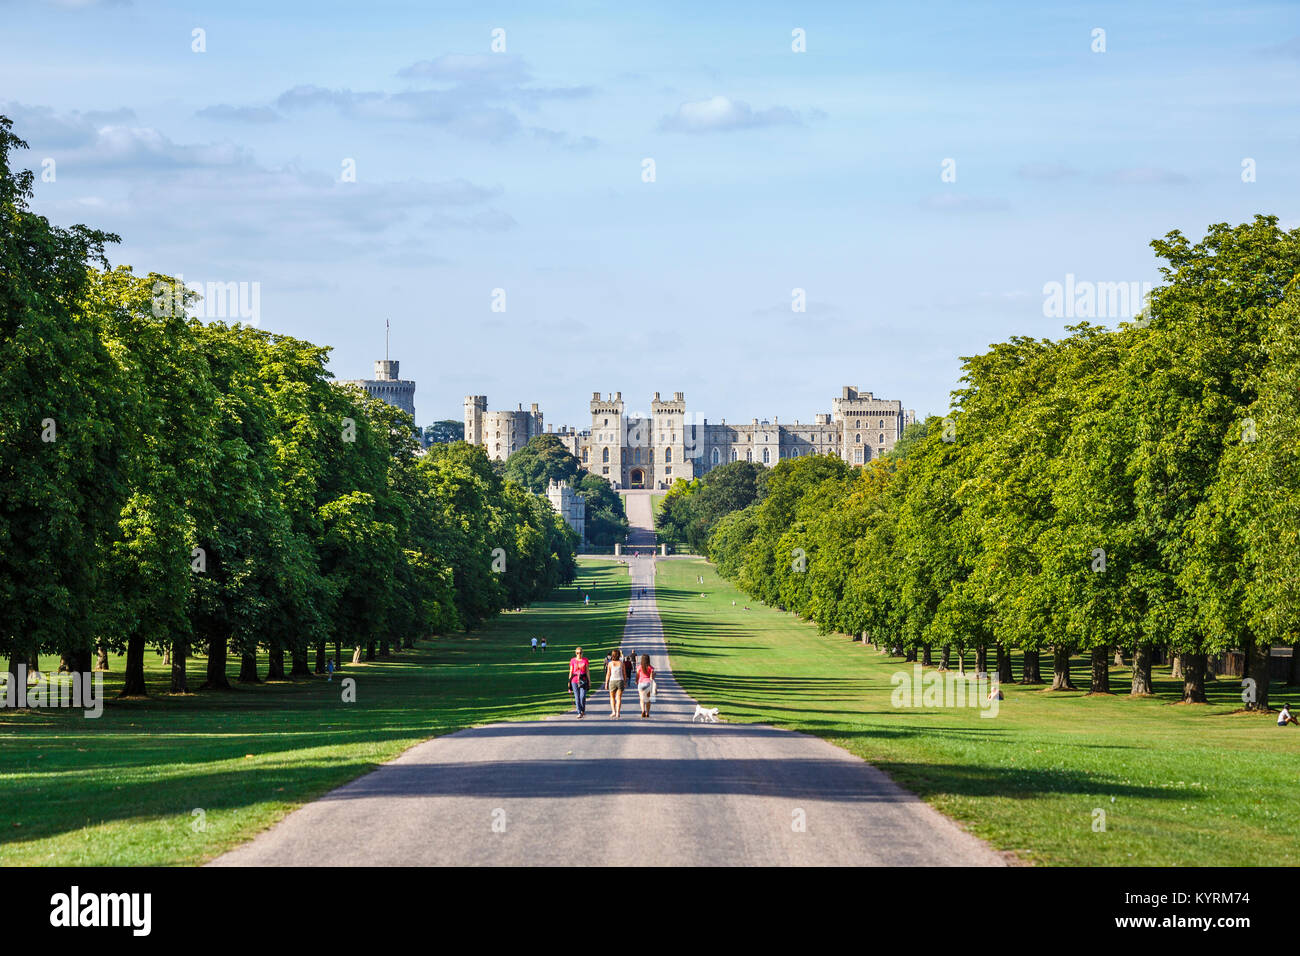 Icónica residencia real, el histórico castillo de Windsor vistos a lo largo de la Caminata en un día soleado de verano, con el cielo azul, el Windsor, Berks, REINO UNIDO Foto de stock